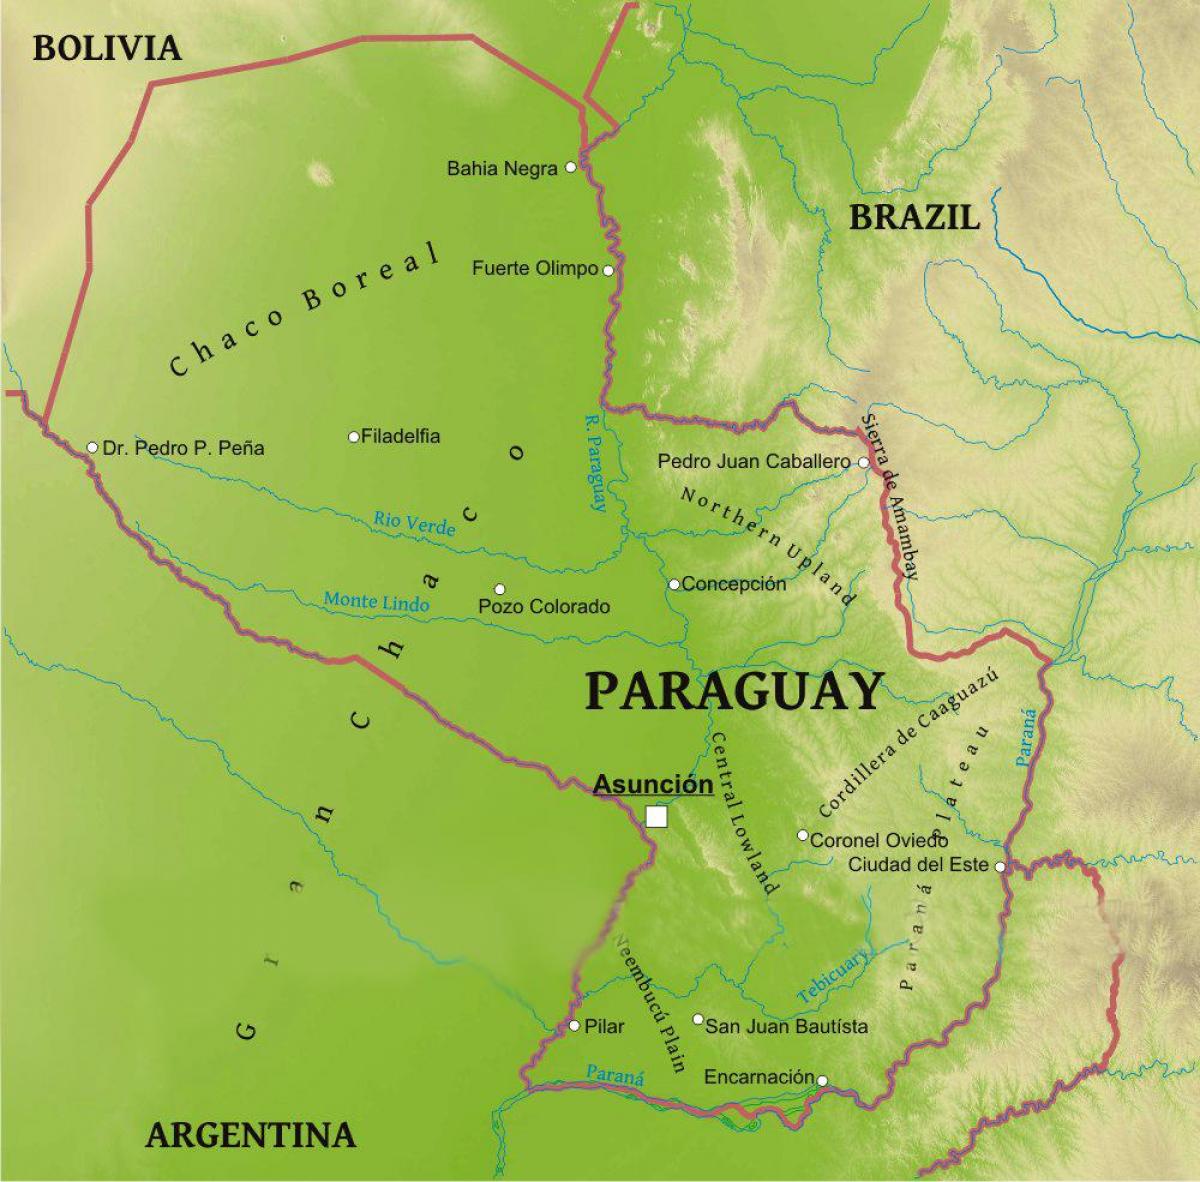 نقشه از پاراگوئه جغرافیا